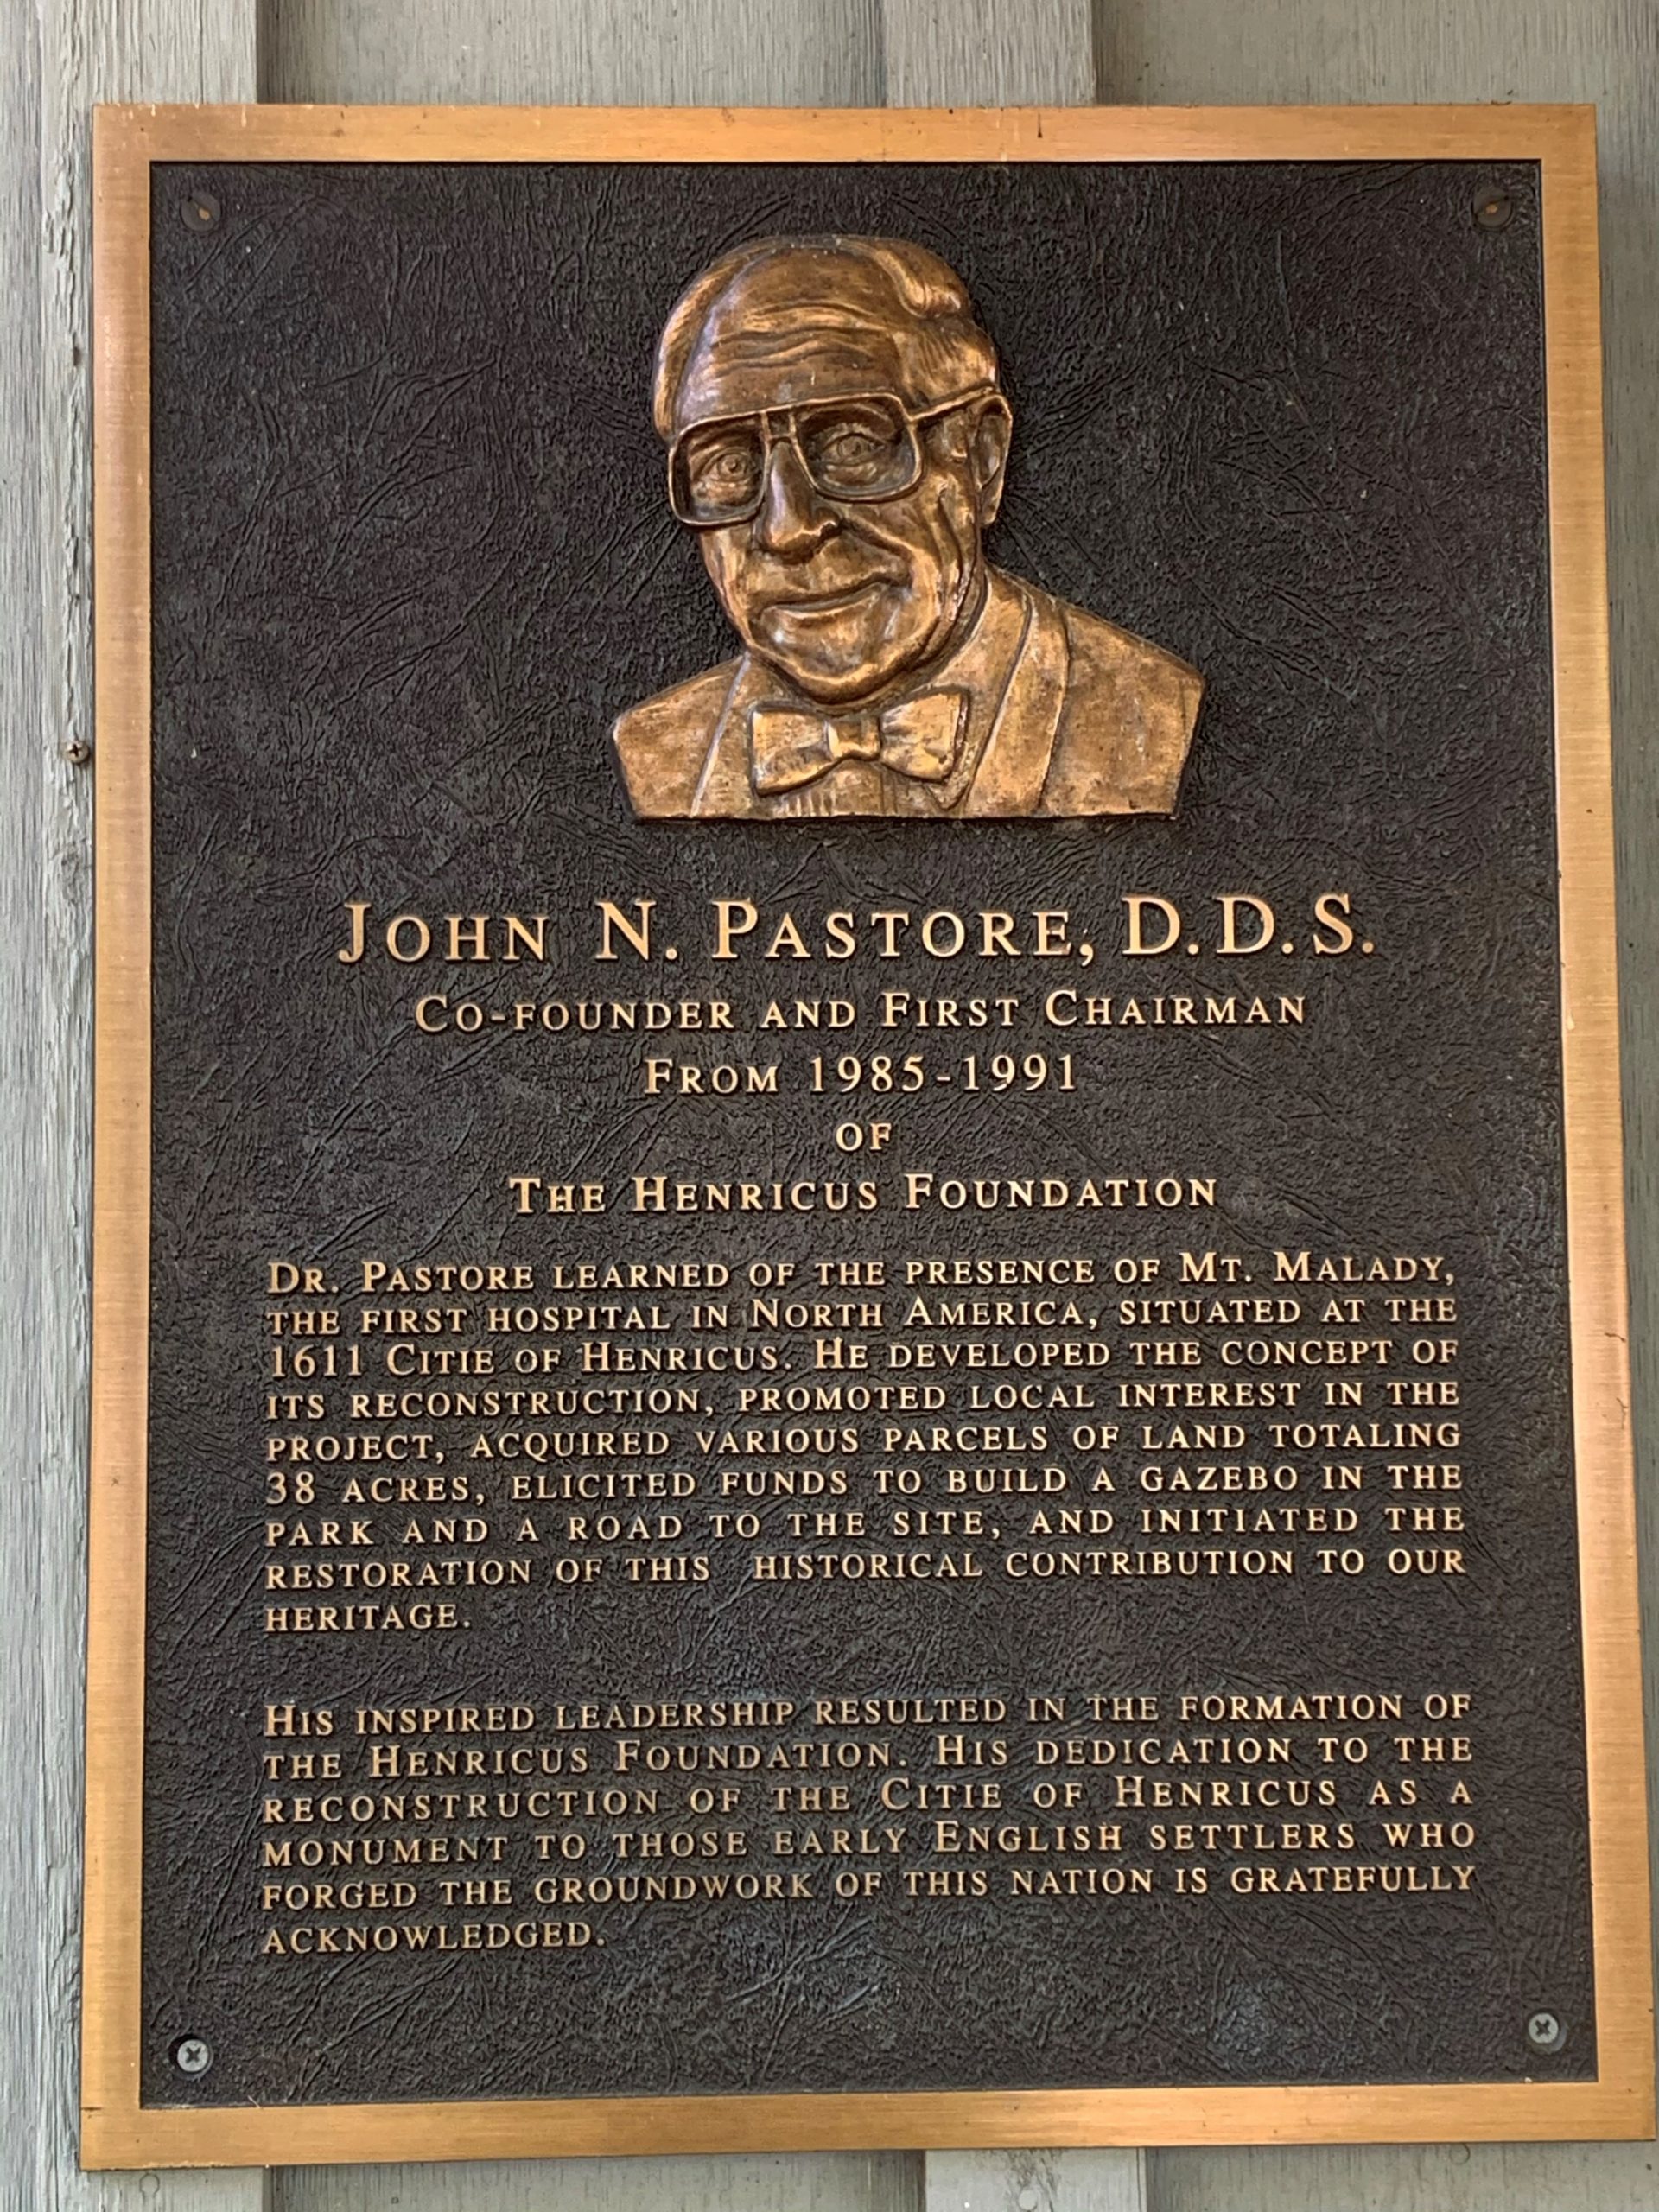 Plaque of Dr. Pastore